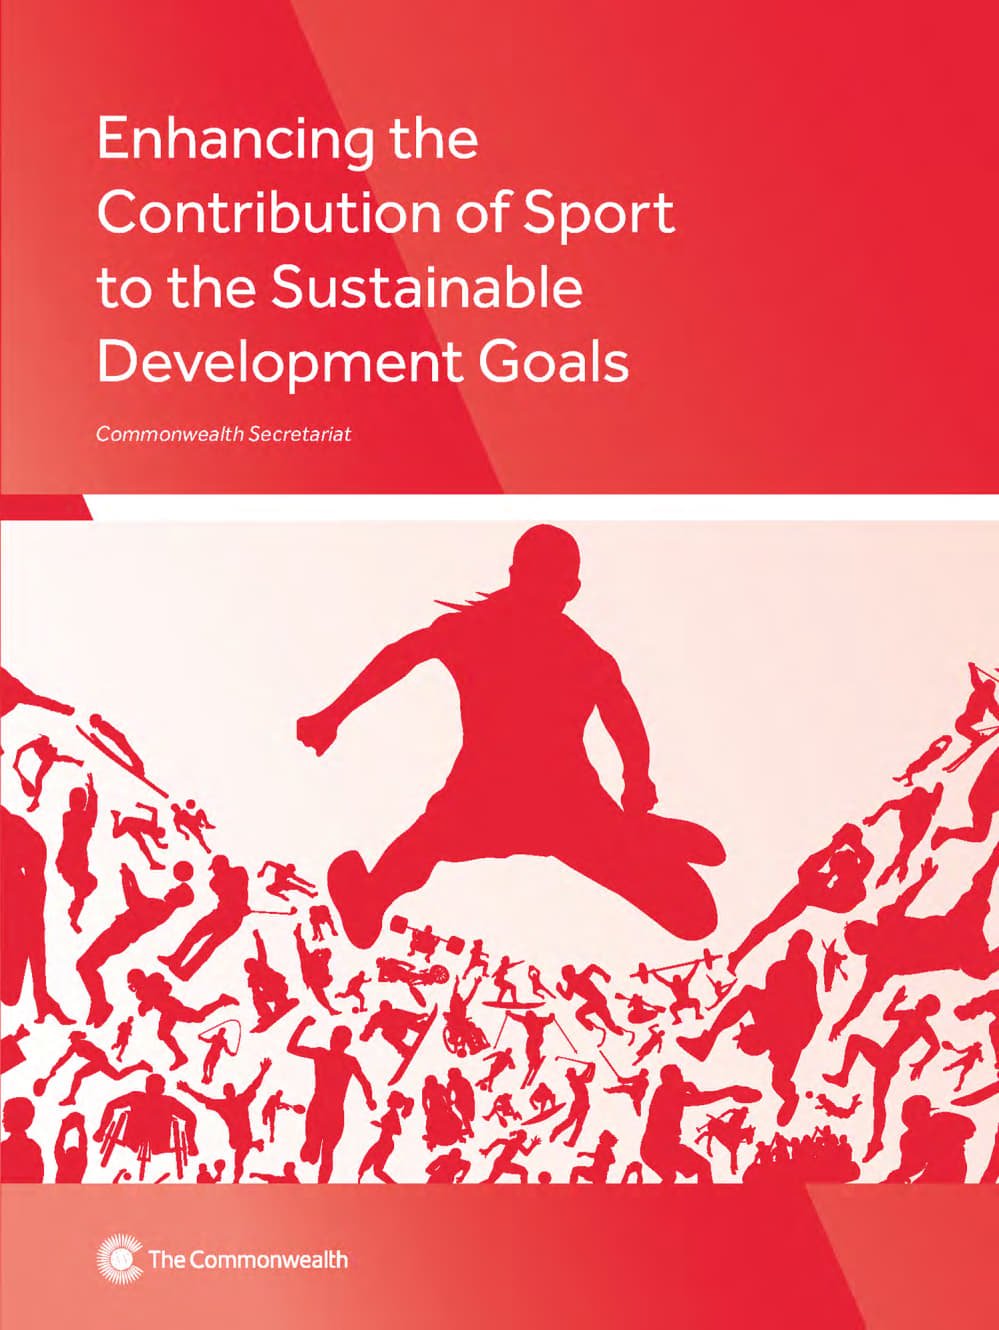 تحسين المساهمة من الرياضة للتنمية المستدامة